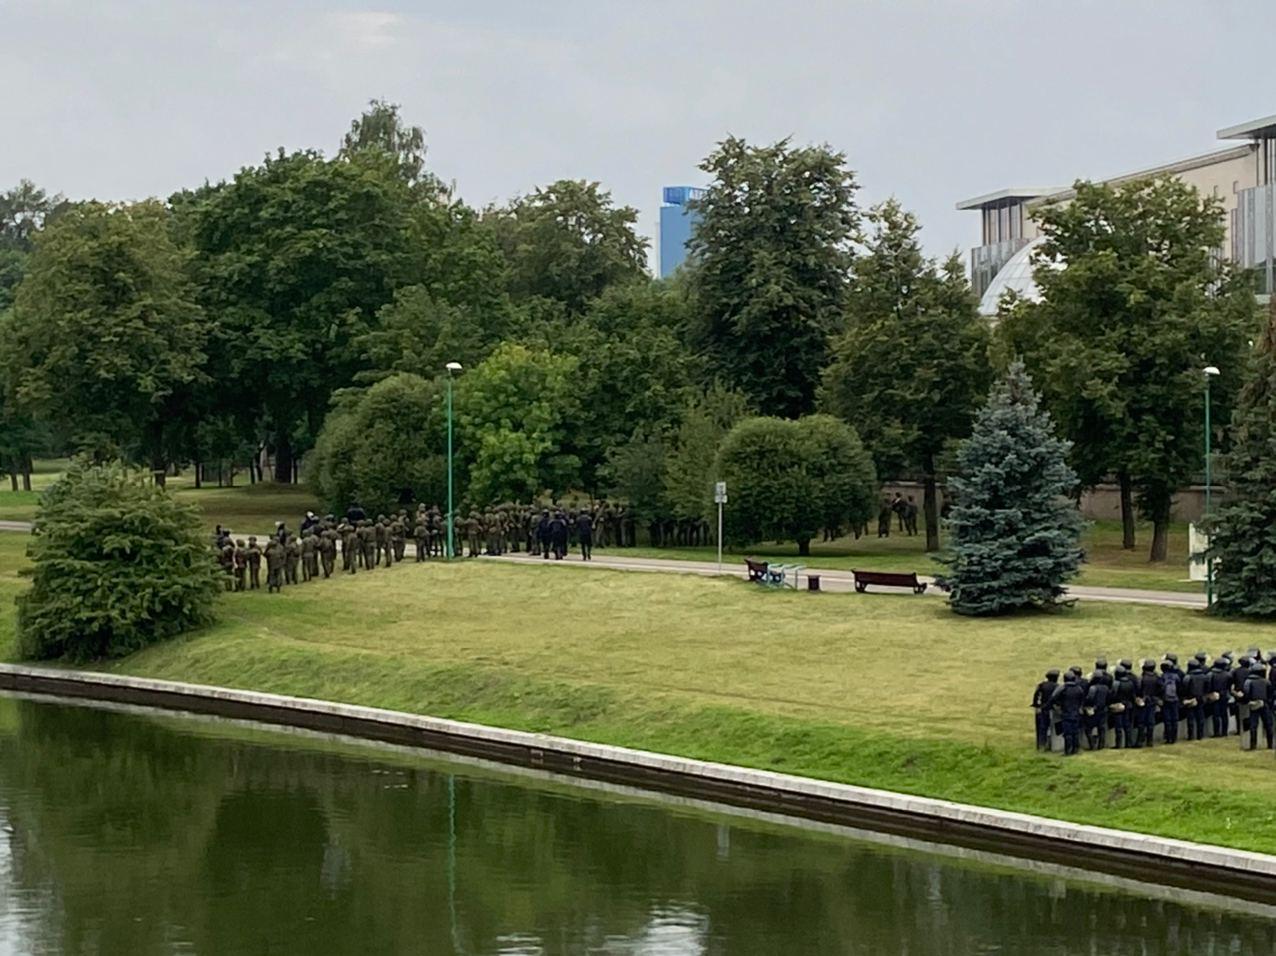 Марш новой Беларуси: Стела, кордон возле дворца Независимости и верталёт (фото)